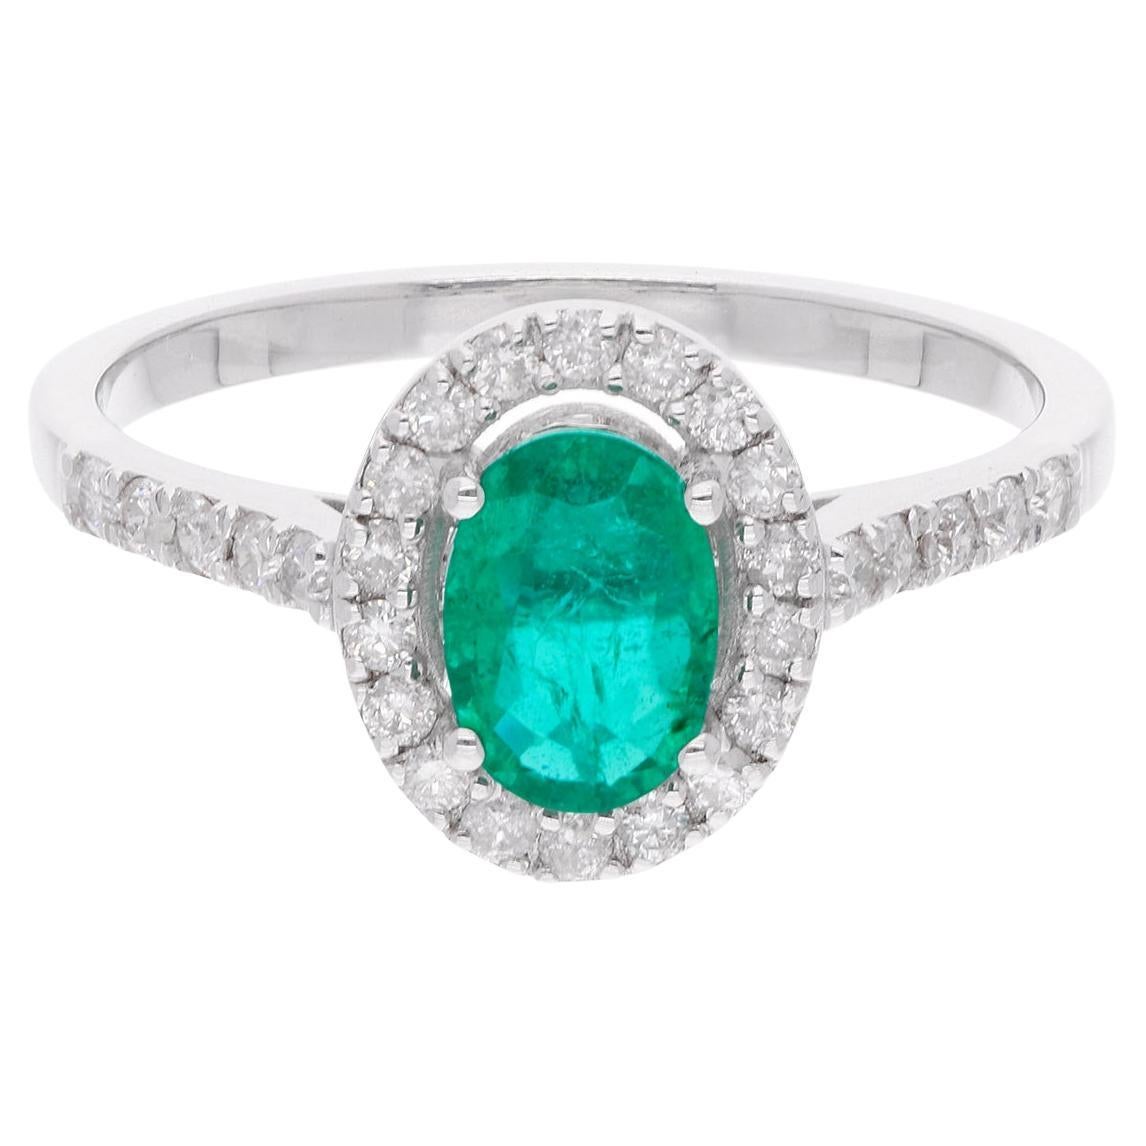 Oval Zambian Emerald Gemstone Ring Pave Diamond 18 Karat White Gold Fine Jewelry